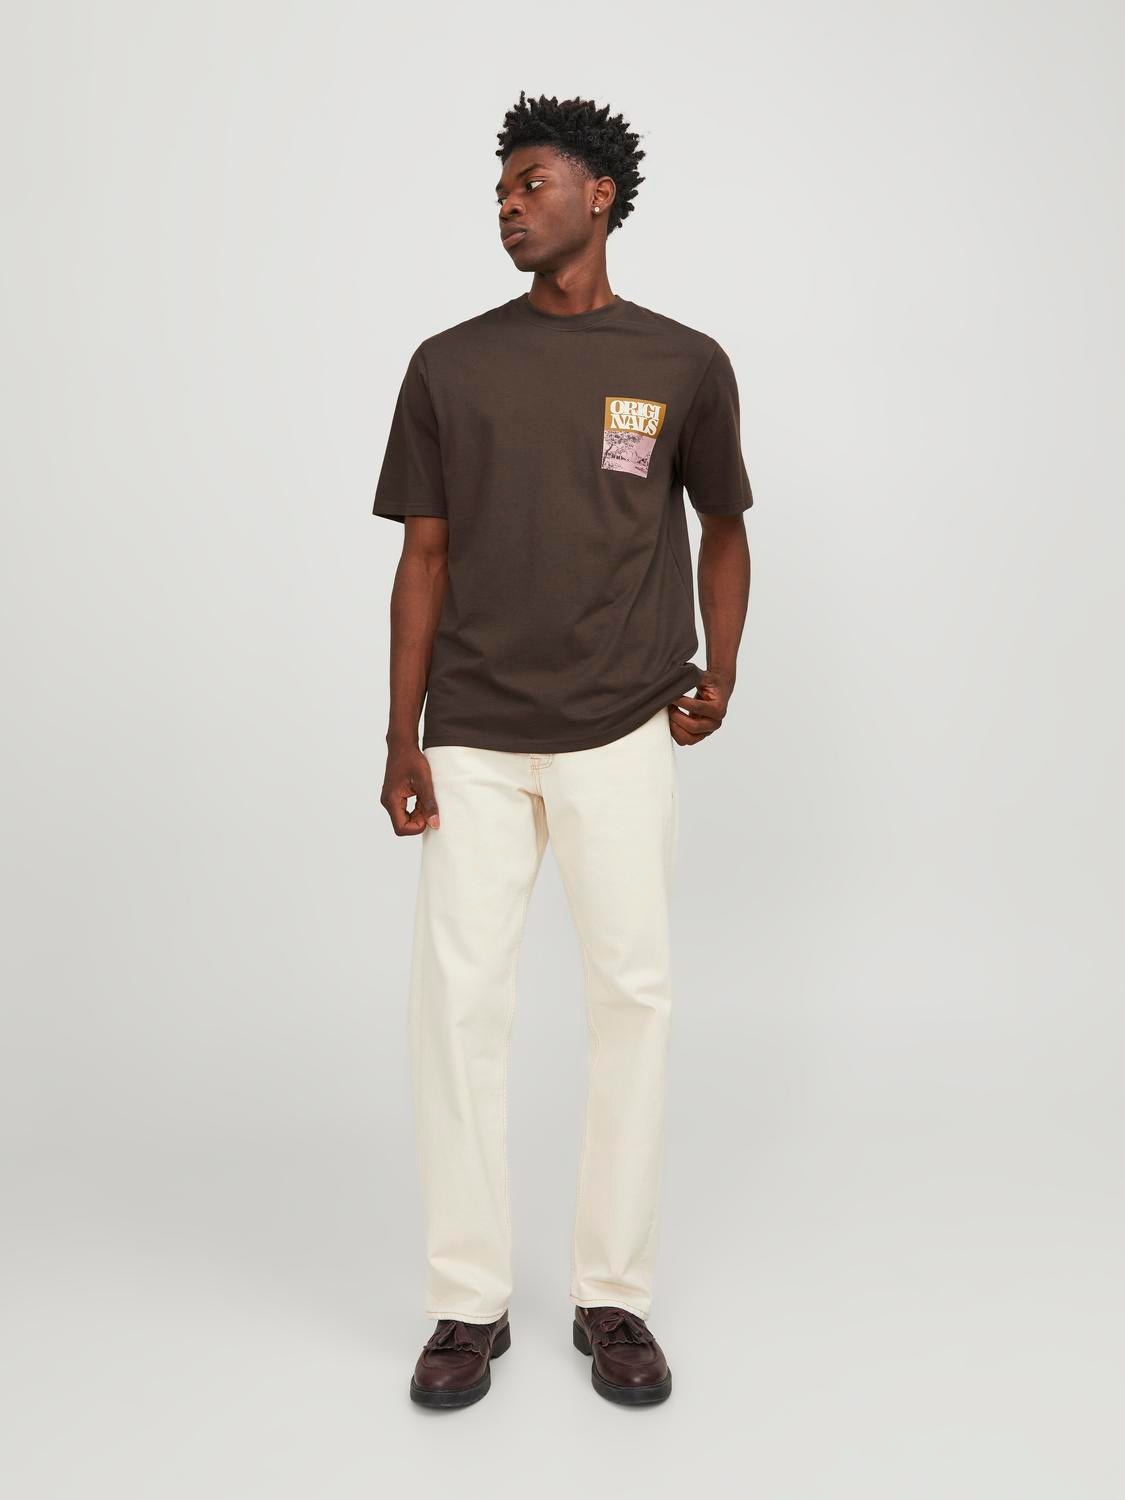 Jack & Jones Gedrukt Ronde hals T-shirt -Chocolate Brown - 12246451